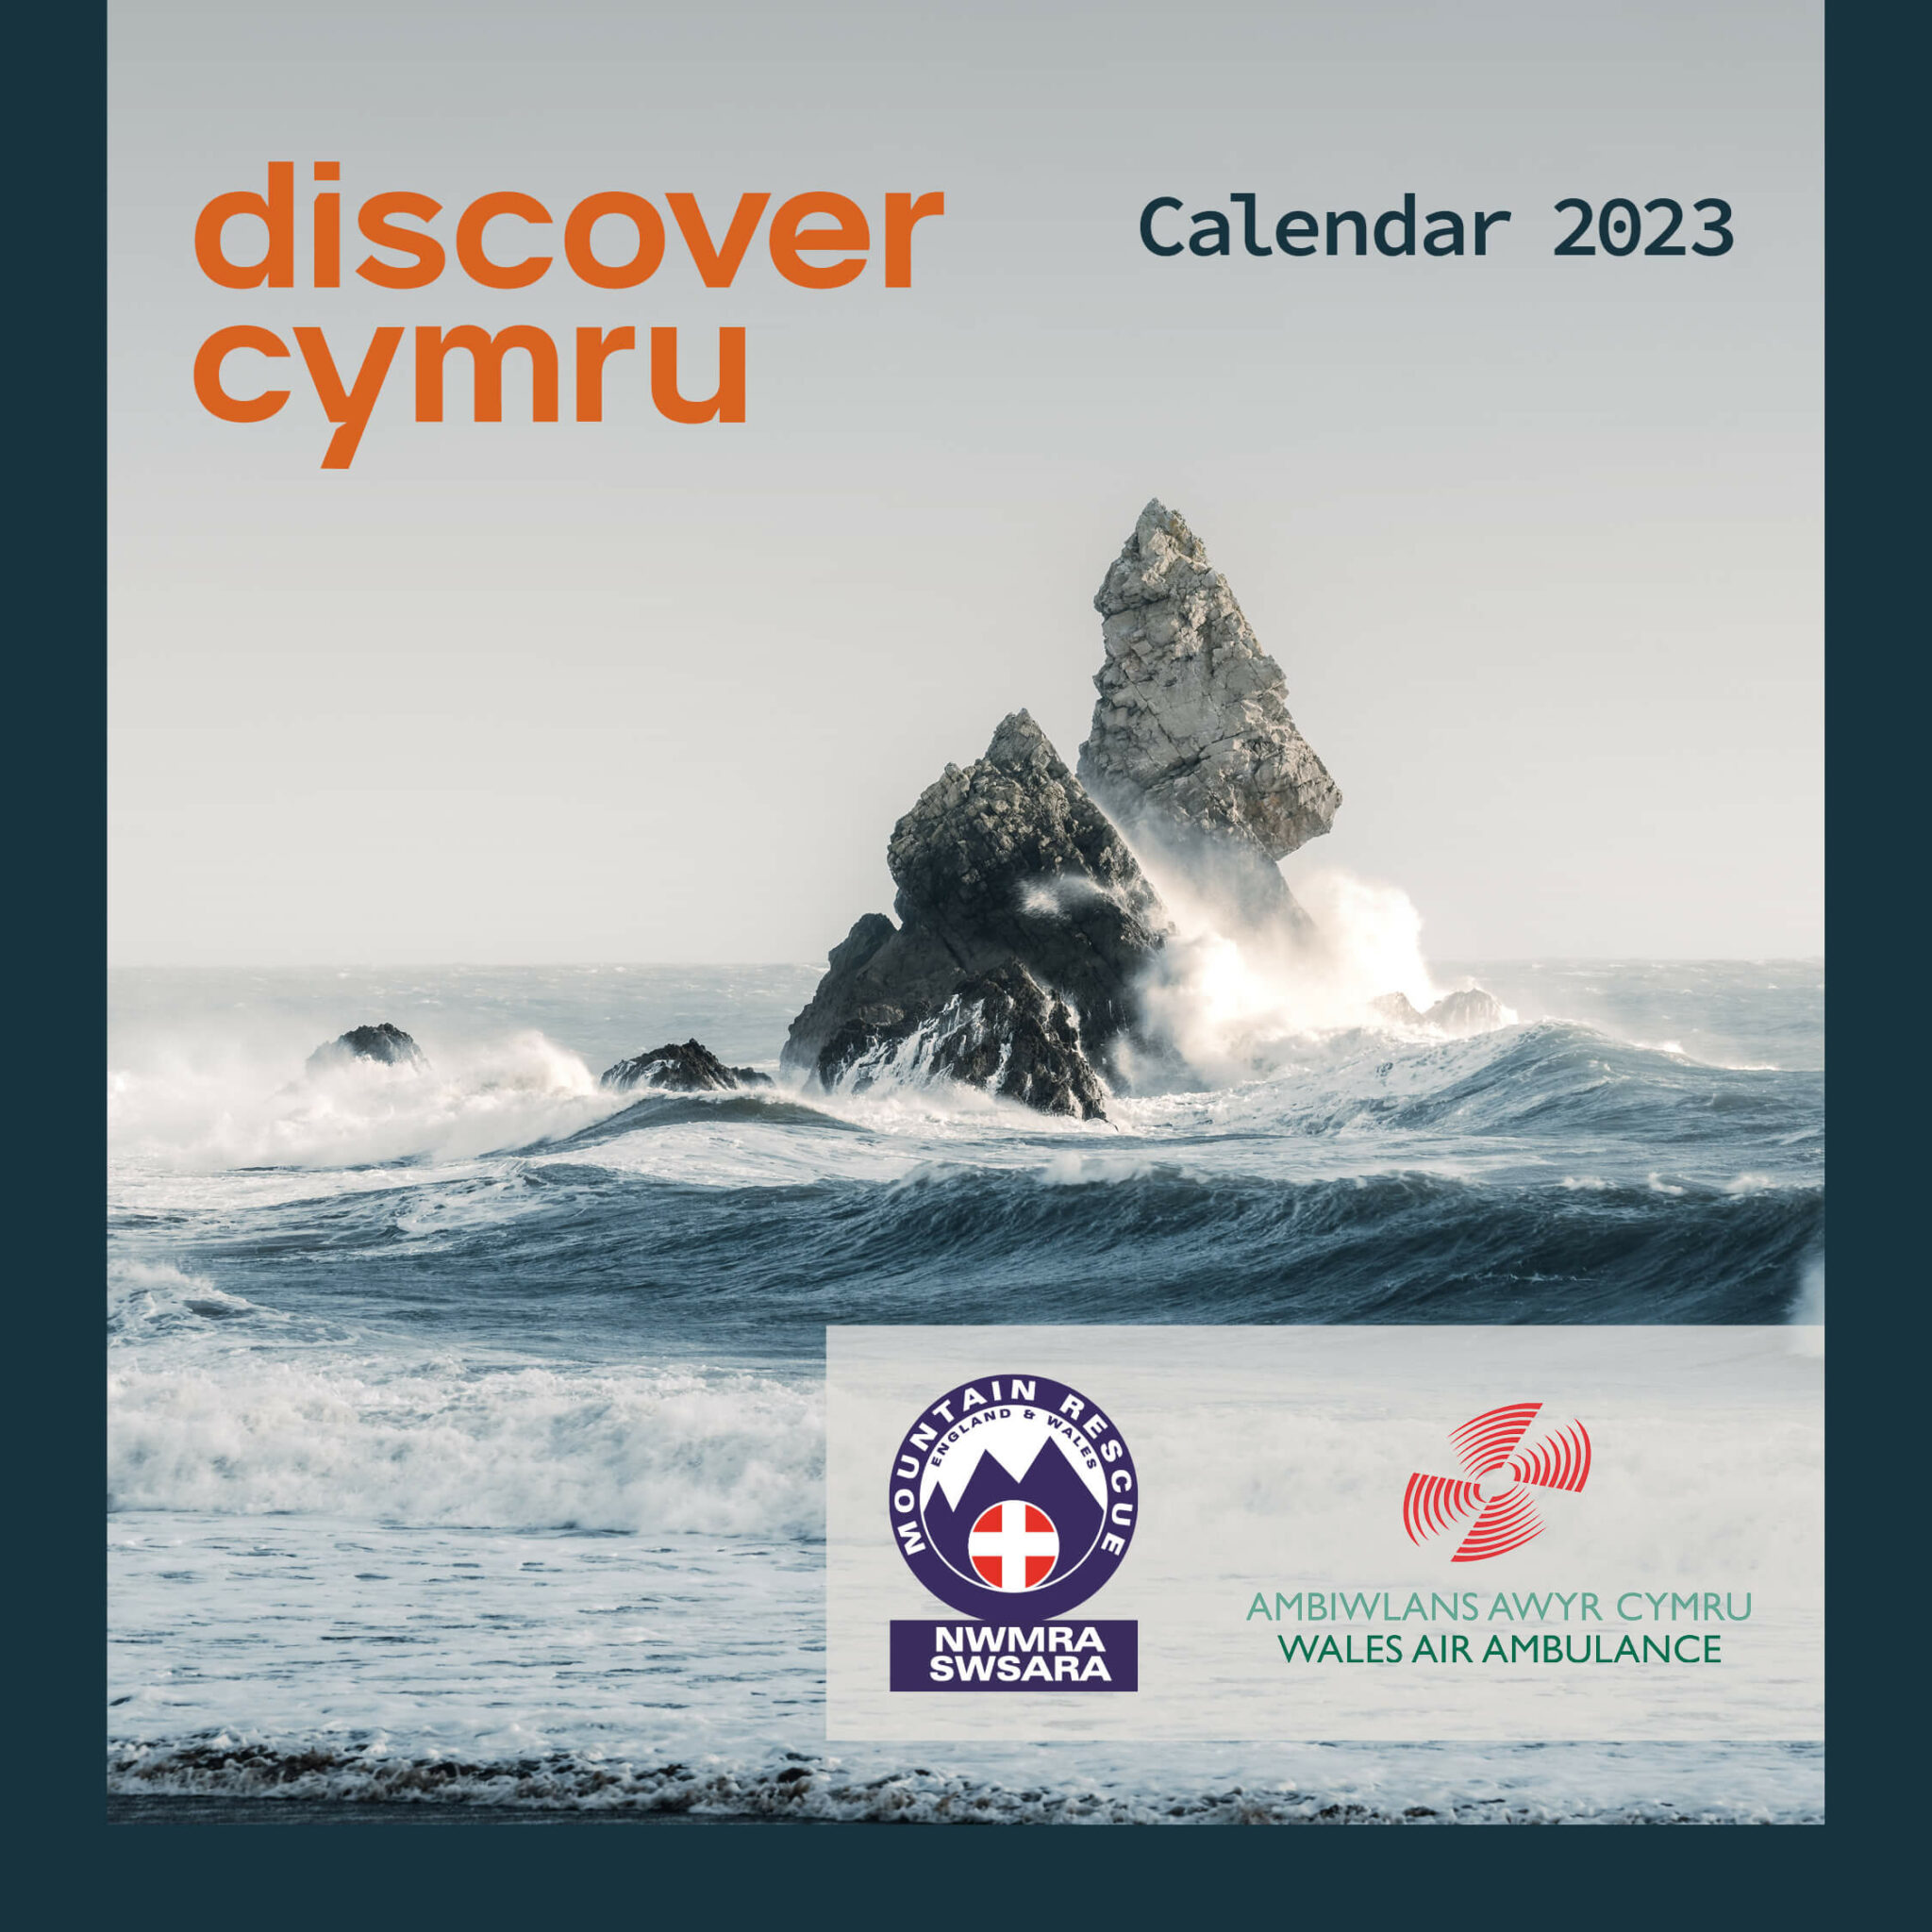 Discover Cymru Calendar 2023 Wales Discover Cymru